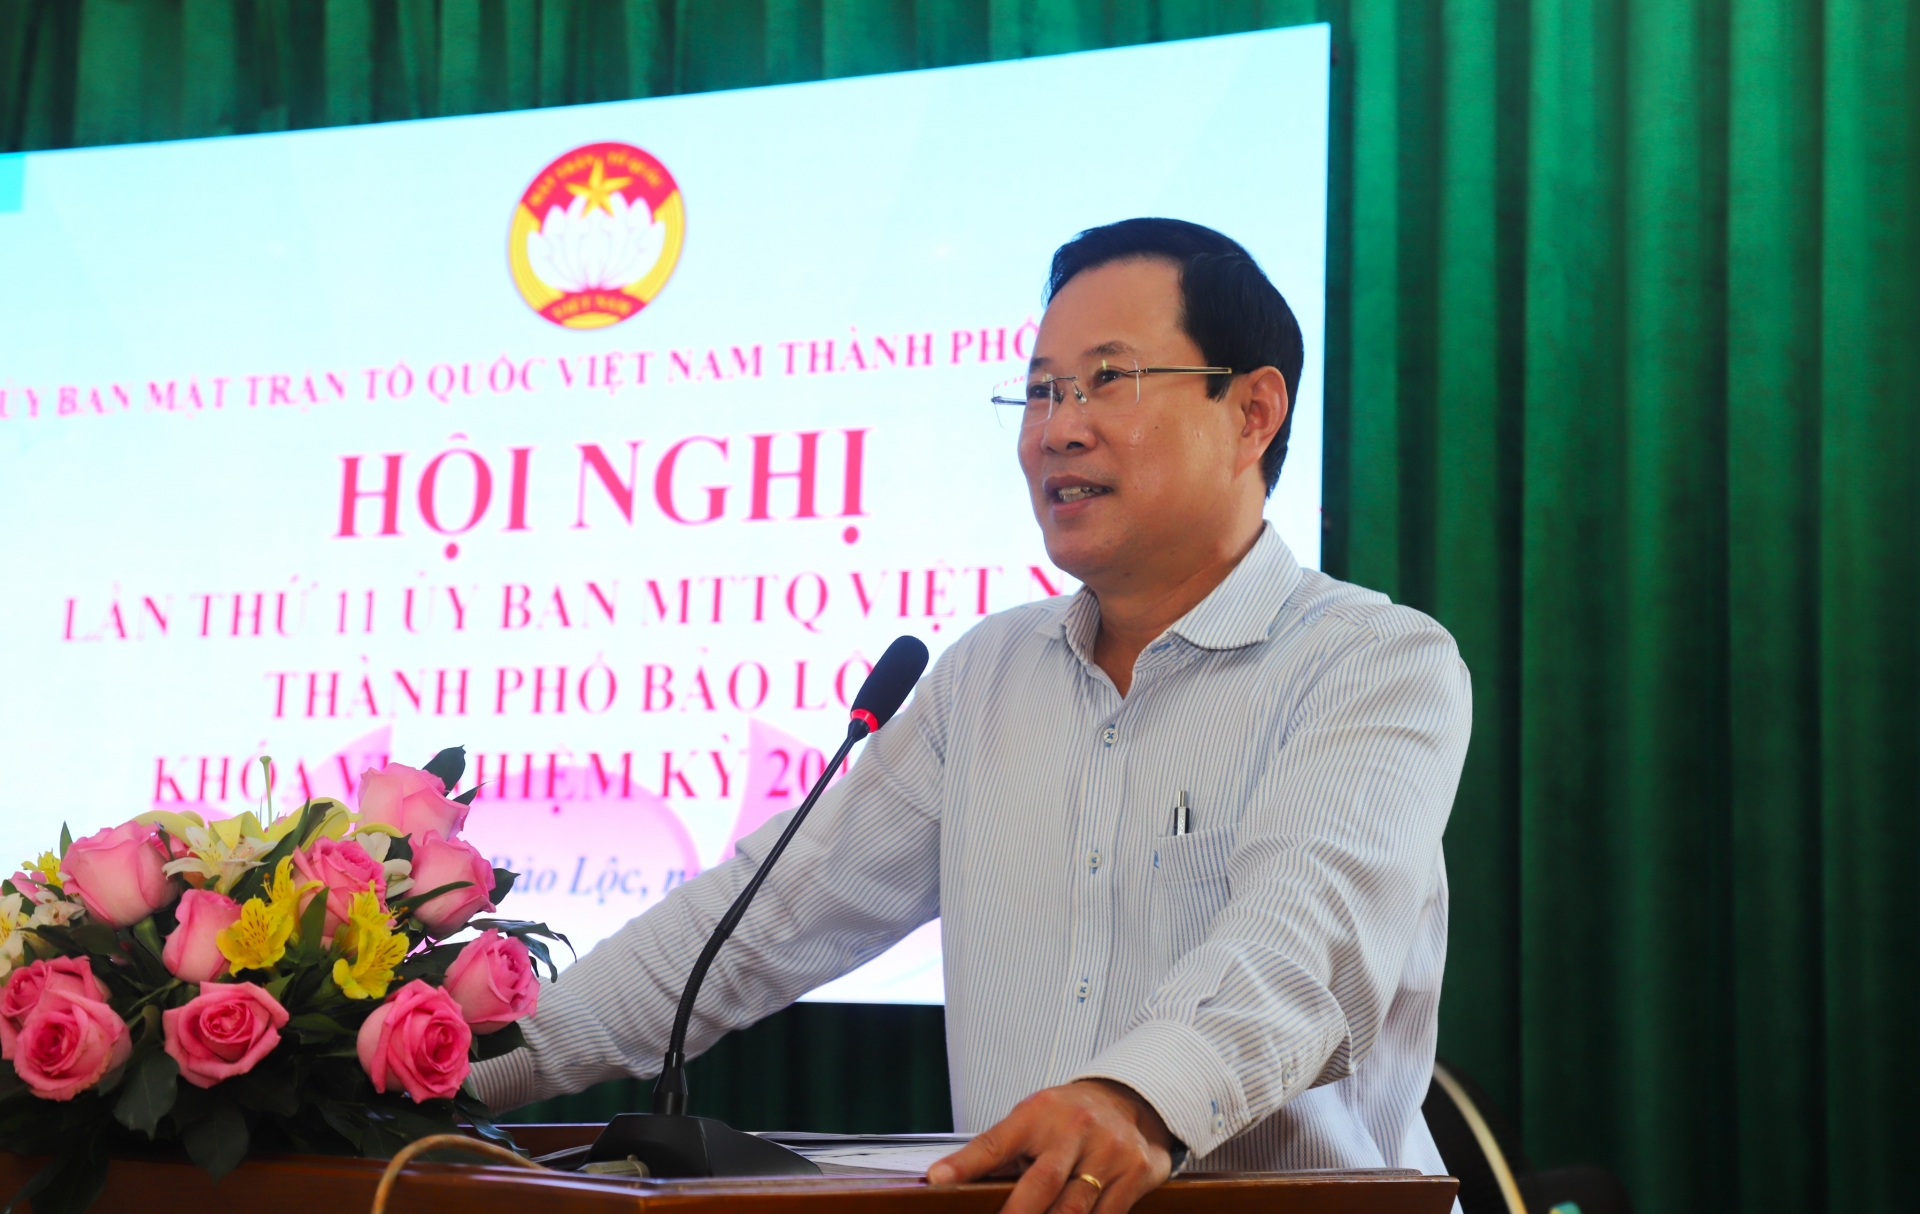 Đồng chí Phạm Triều - Chủ tịch Ủy ban MTTQ Việt Nam tỉnh Lâm Đồng phát biểu chỉ đạo tại hội nghị